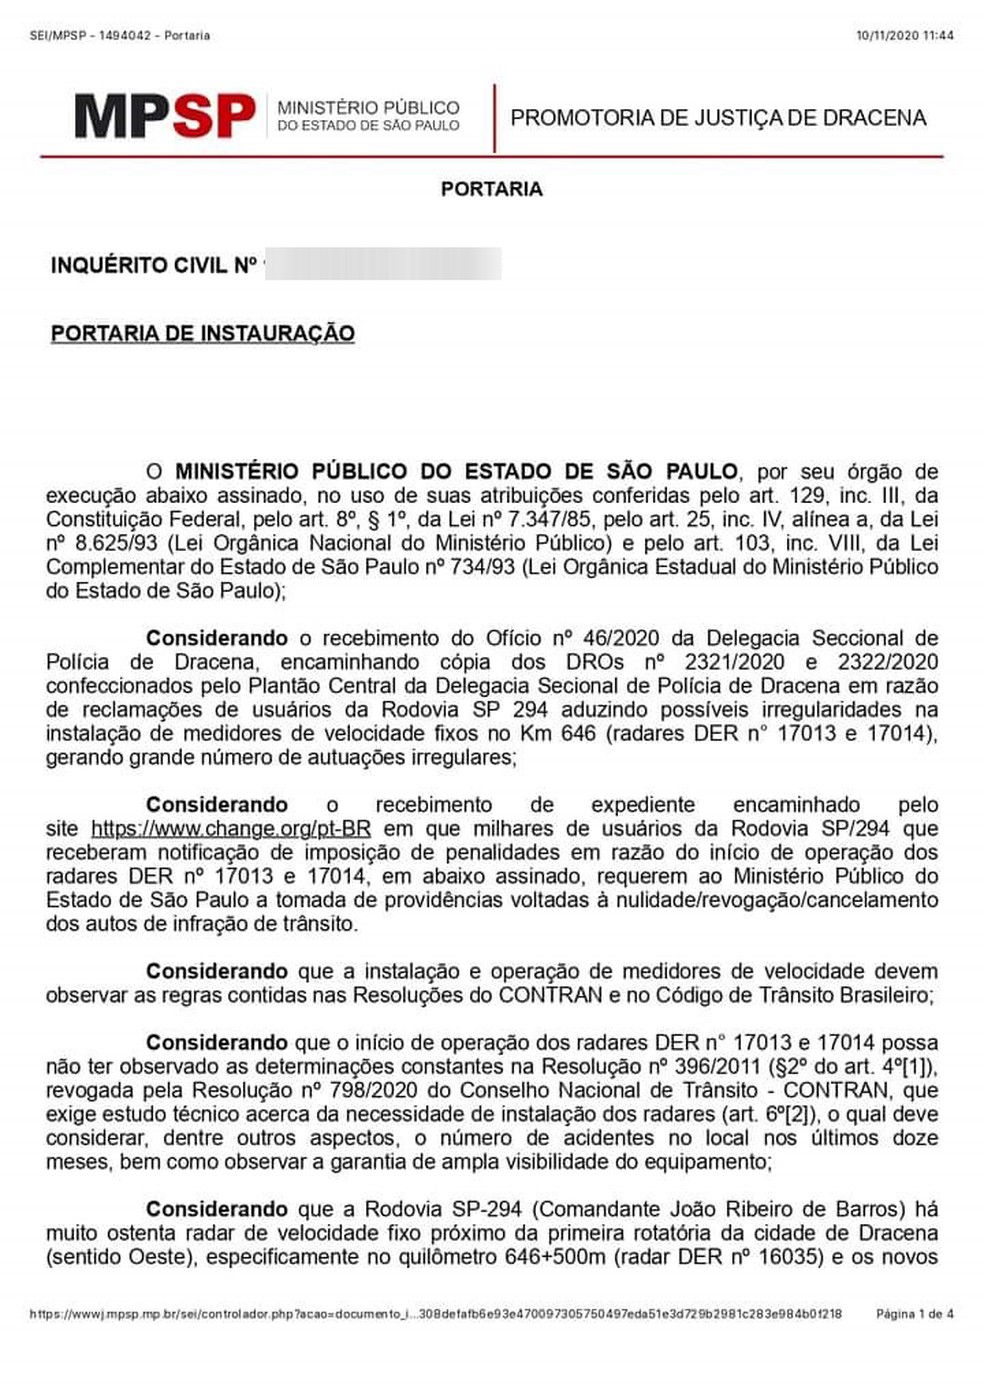 MPE abriu inquérito para apurar supostas irregularidades na instalação de radares em Dracena — Foto: Reprodução